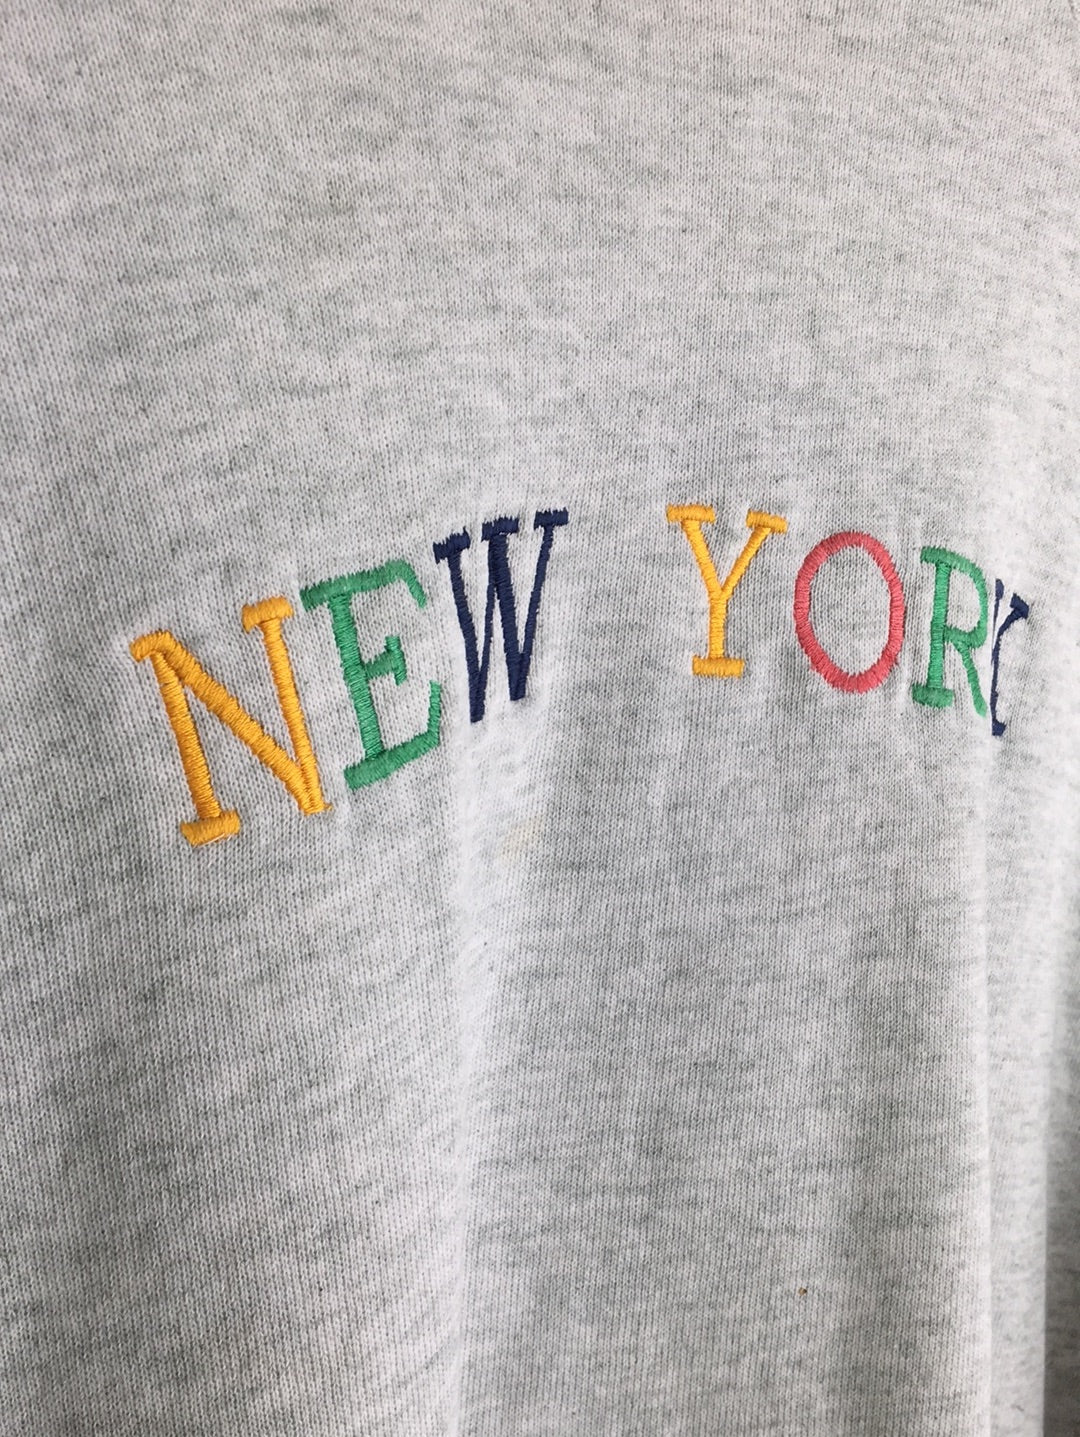 New York Sweater (S)